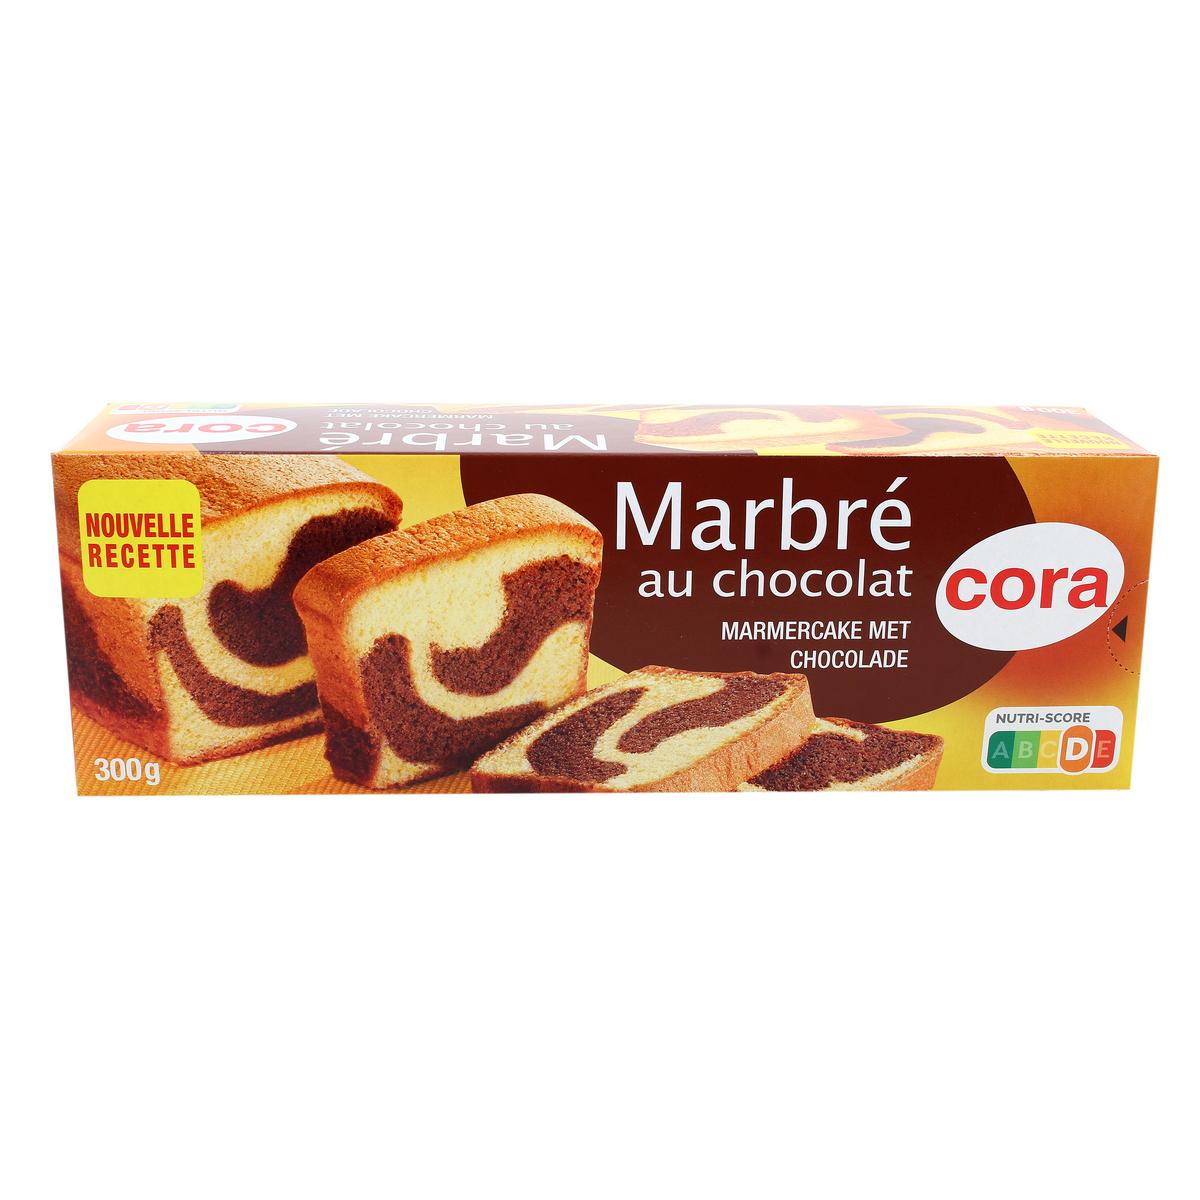 Achat / Vente Promotion Cora Gâteau marbré au chocolat, Lot de 2x300g